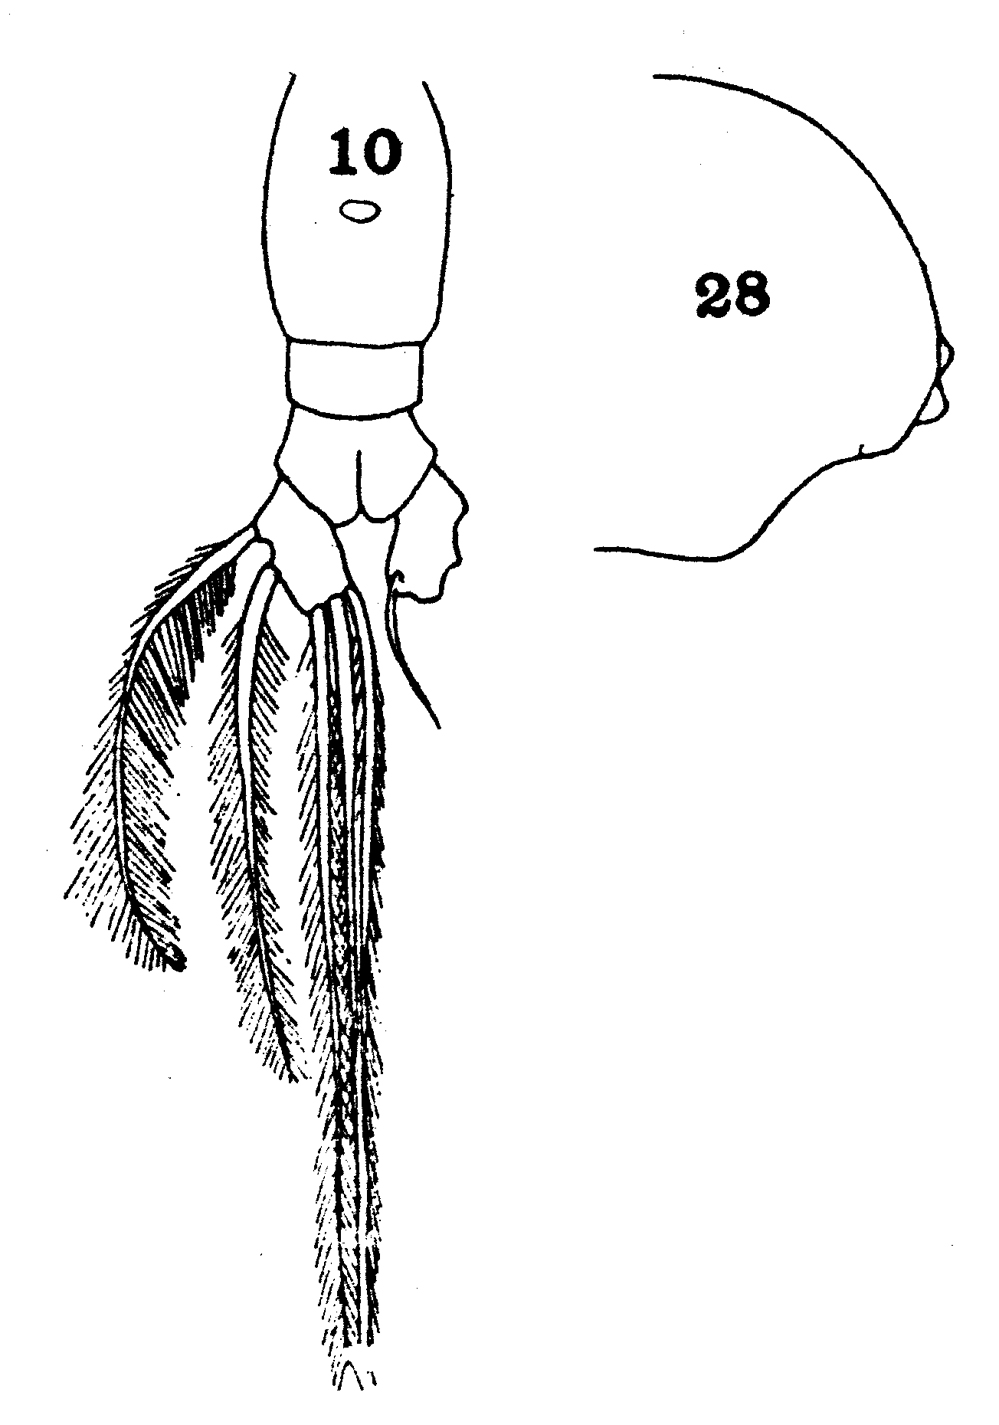 Espèce Euaugaptilus nodifrons - Planche 21 de figures morphologiques